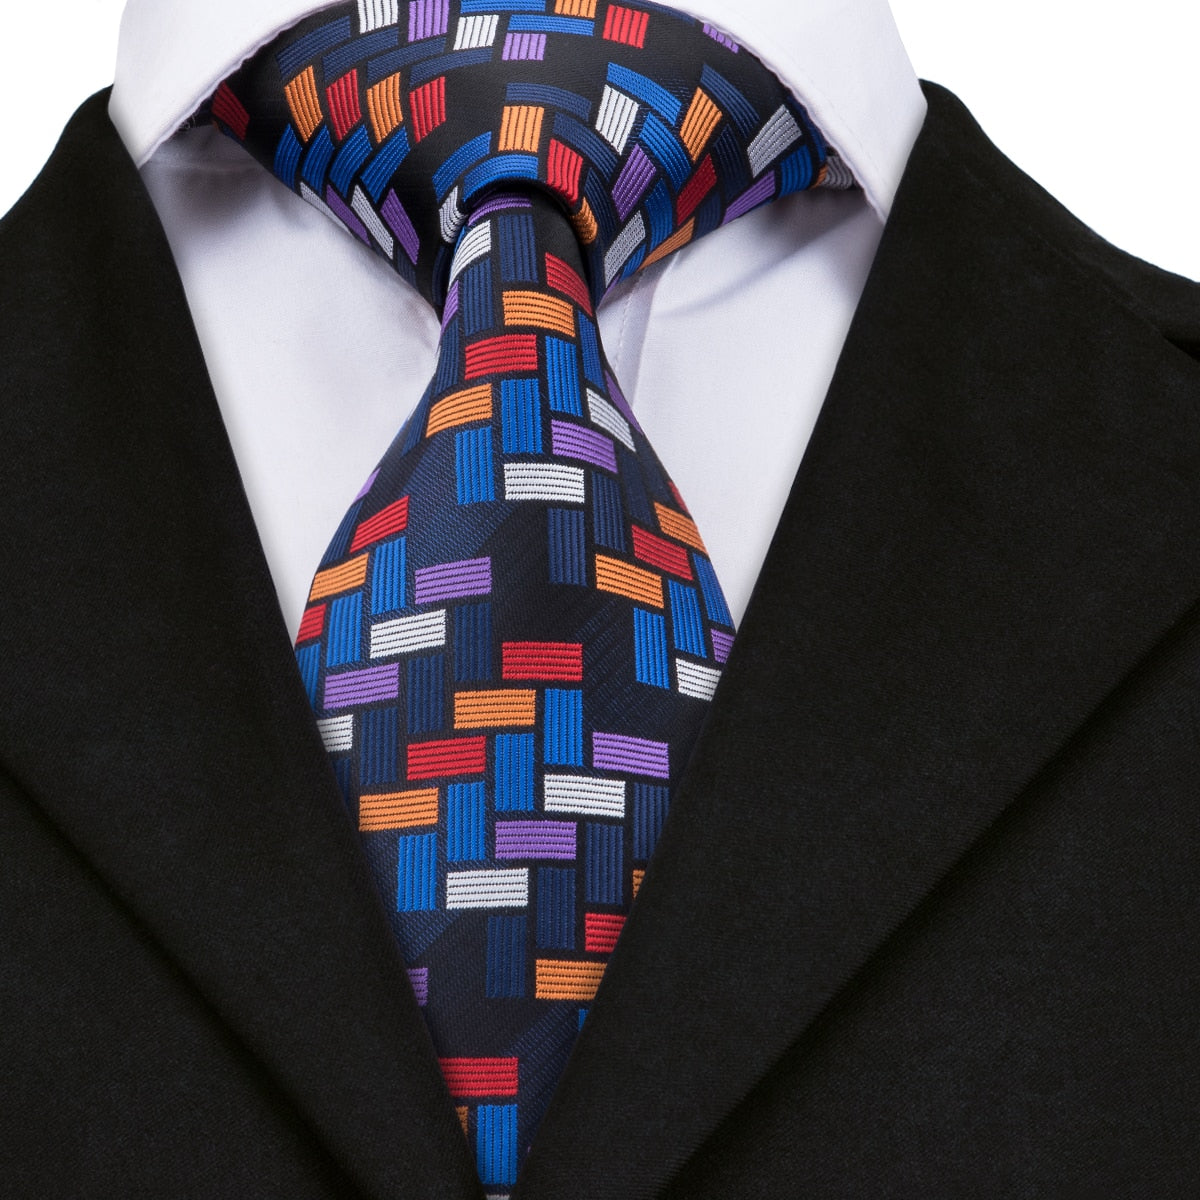 Wielobarwny kwadratowy krawat